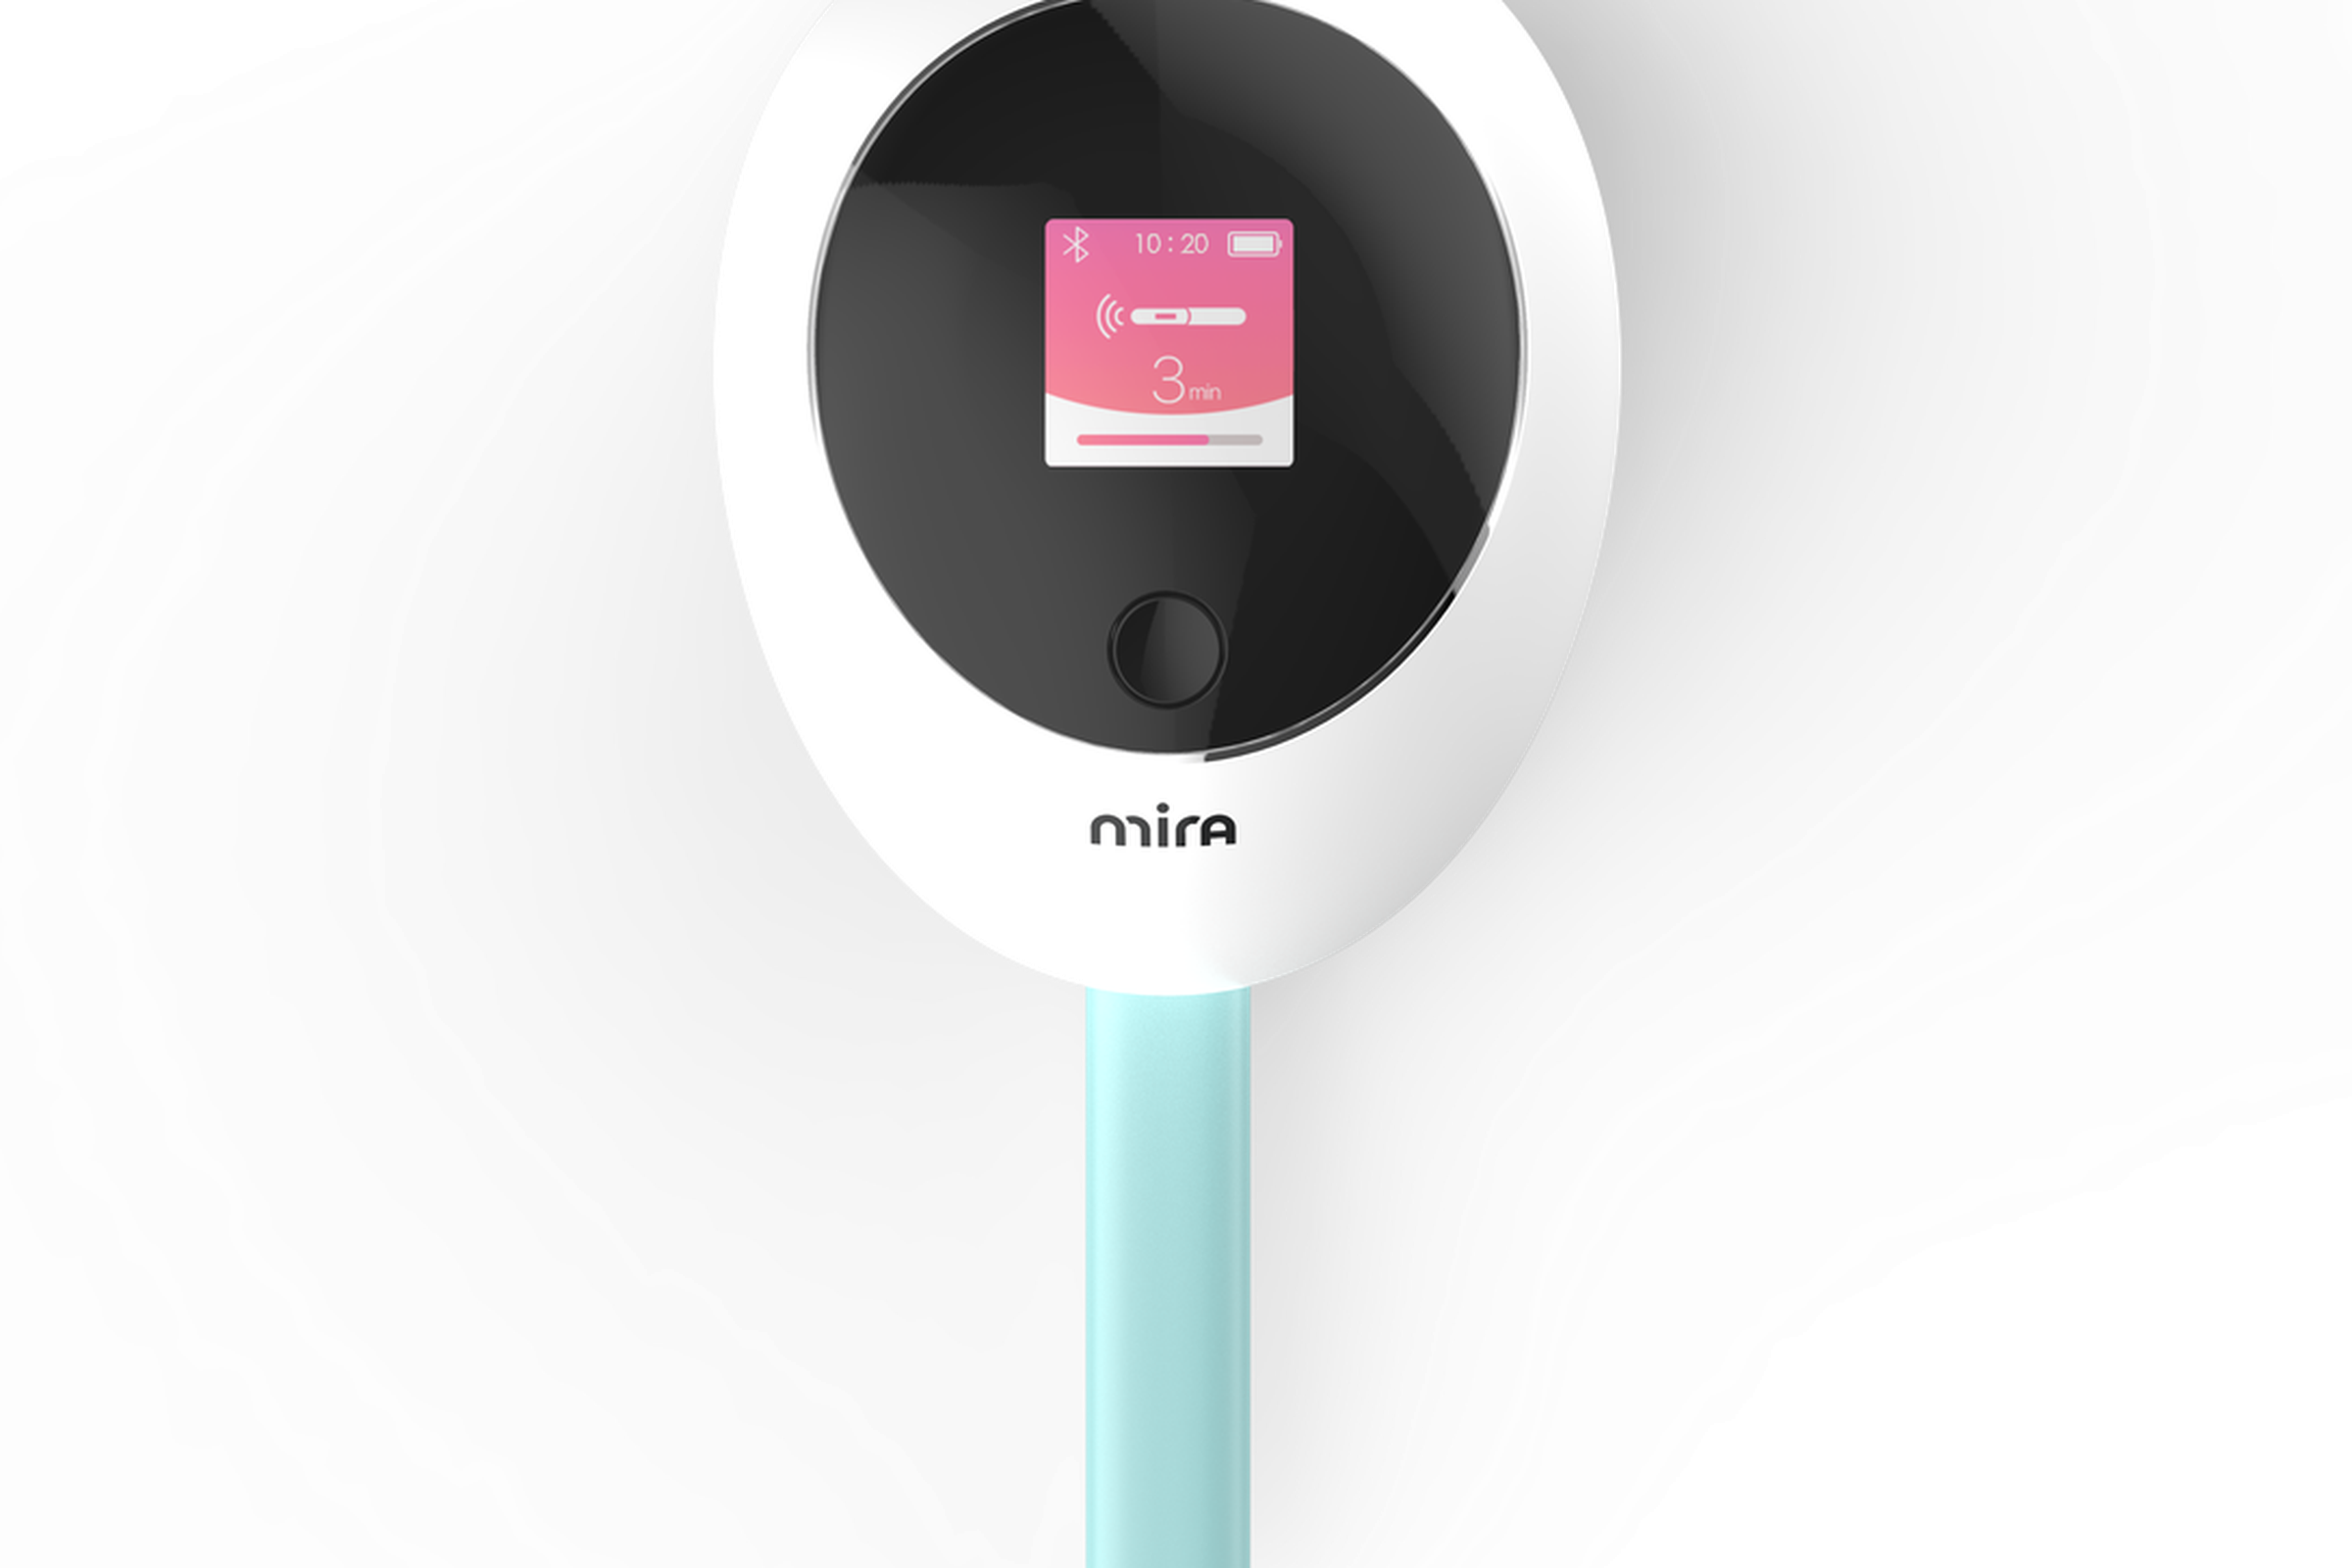 Mira’s fertility monitor